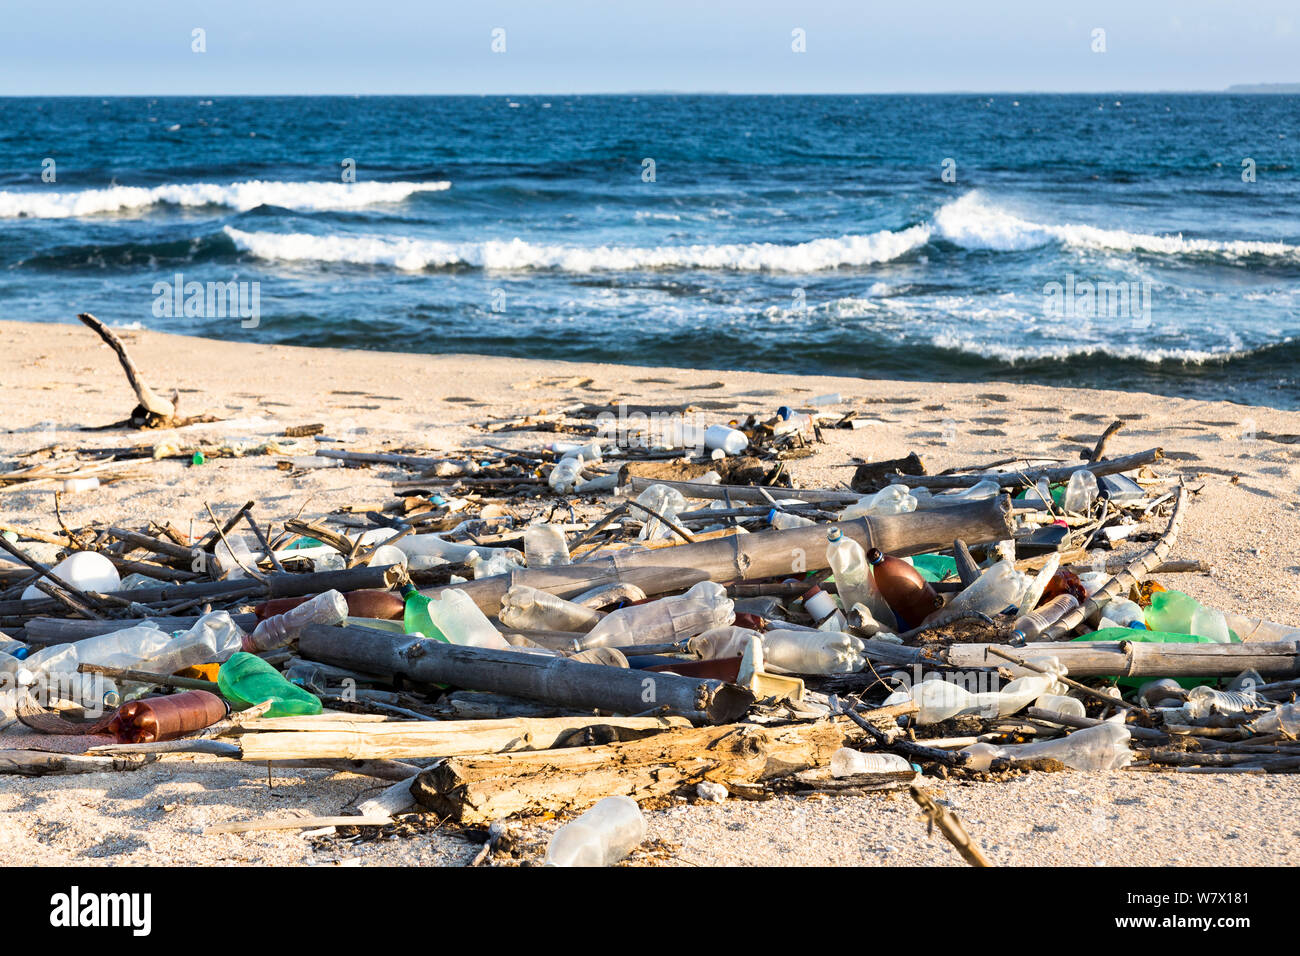 Les débris marins sur la plage le long de la mer des Caraïbes, le Venezuela, février 2014. Banque D'Images